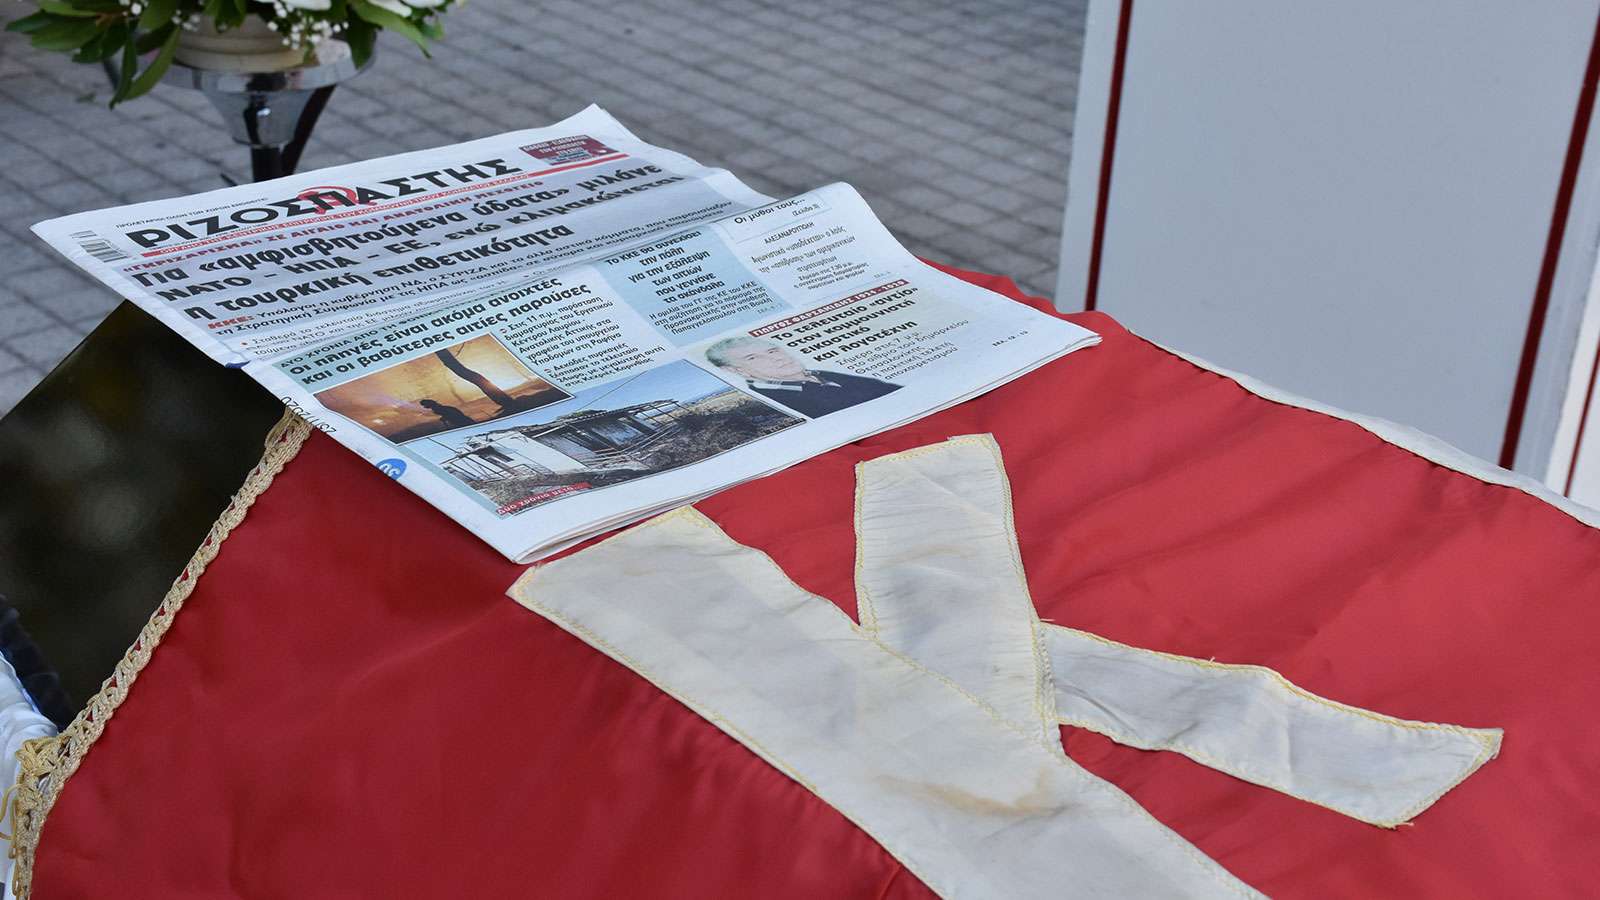 Γιώργης Φαρσακίδης κηδεία με την κόκκινη σημαία το Ριζοσπάστη